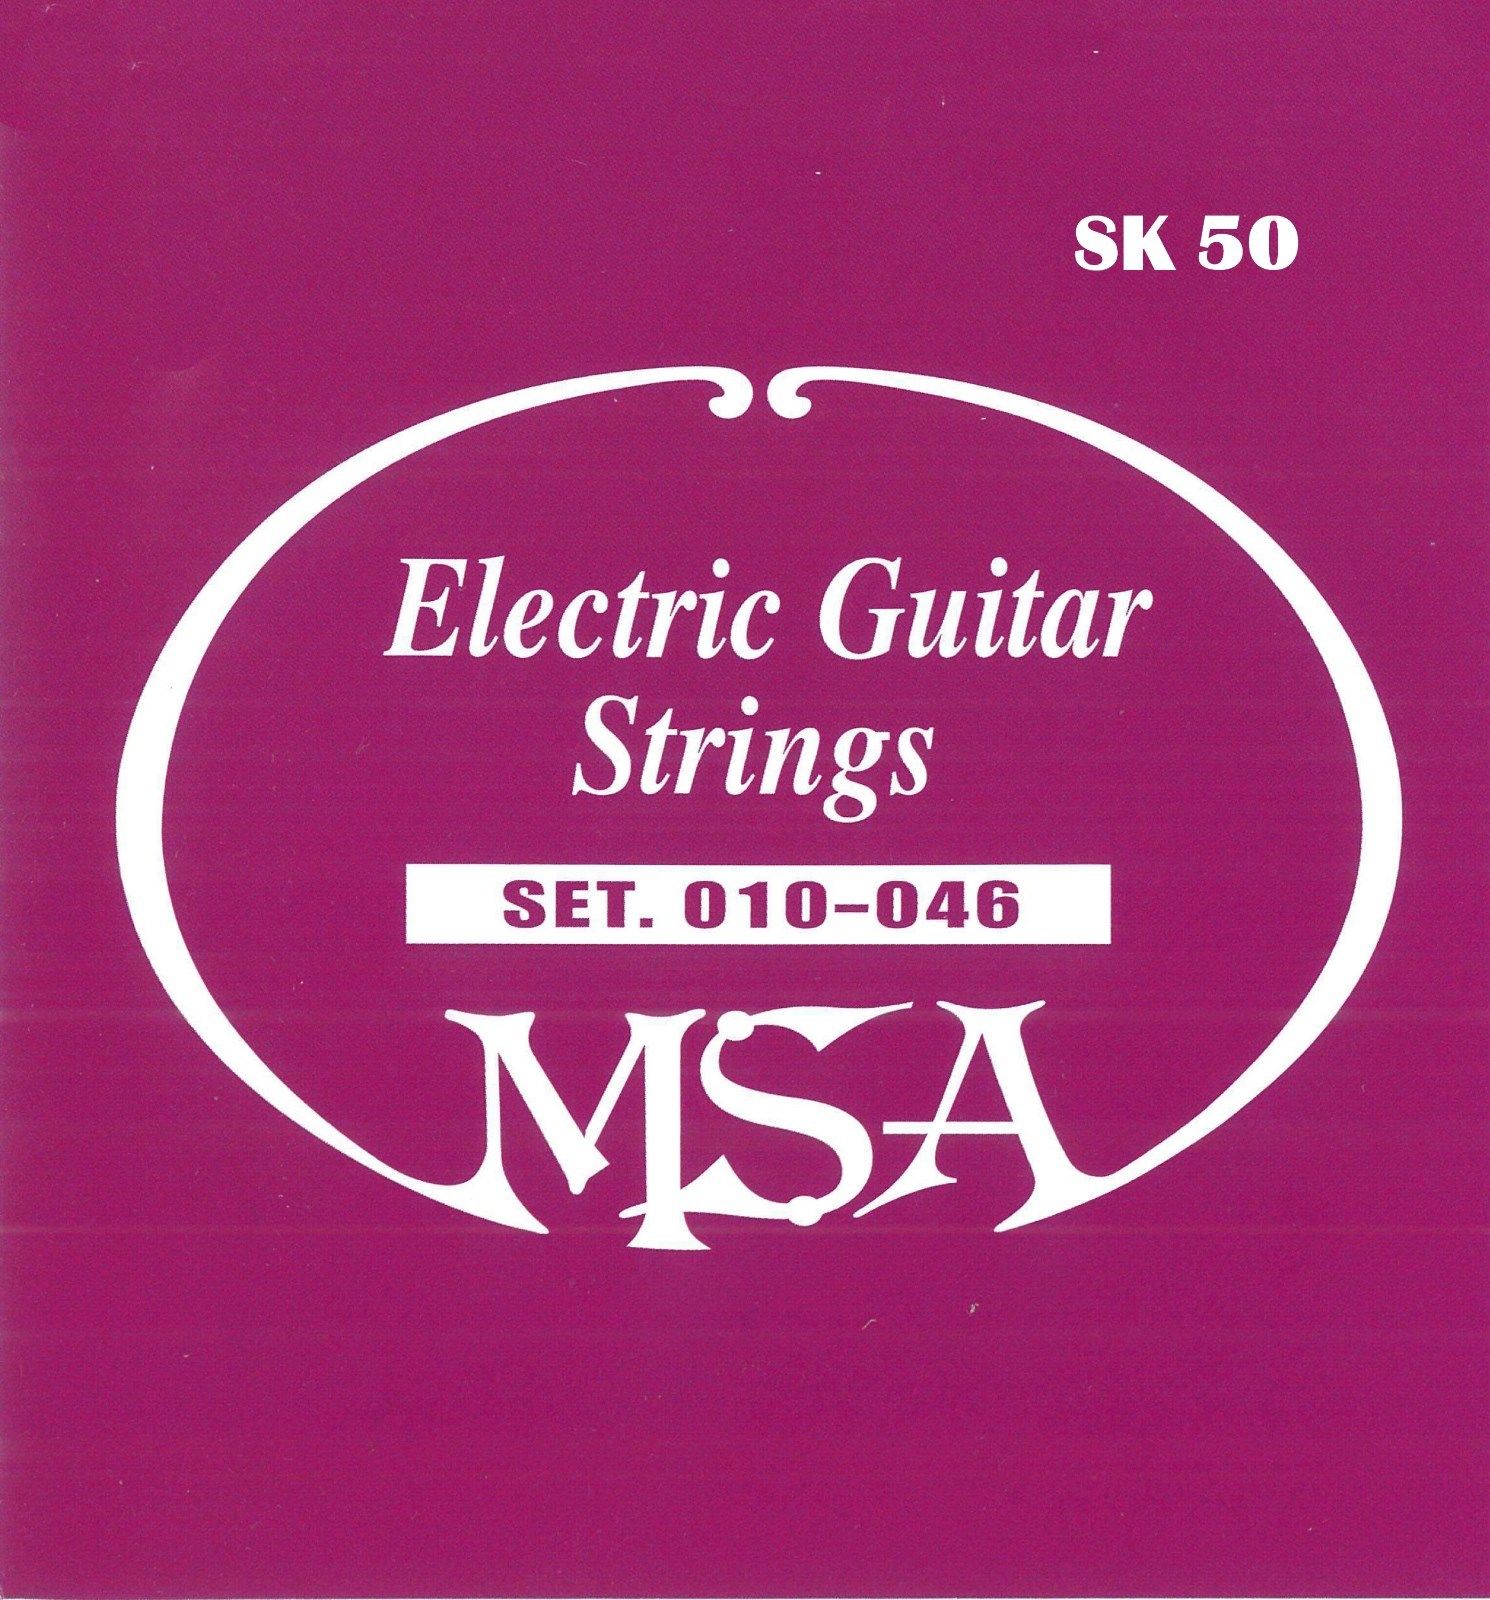 Kytarové ocelové struny - MSA SK50 - síla 010-046, 6 kusů